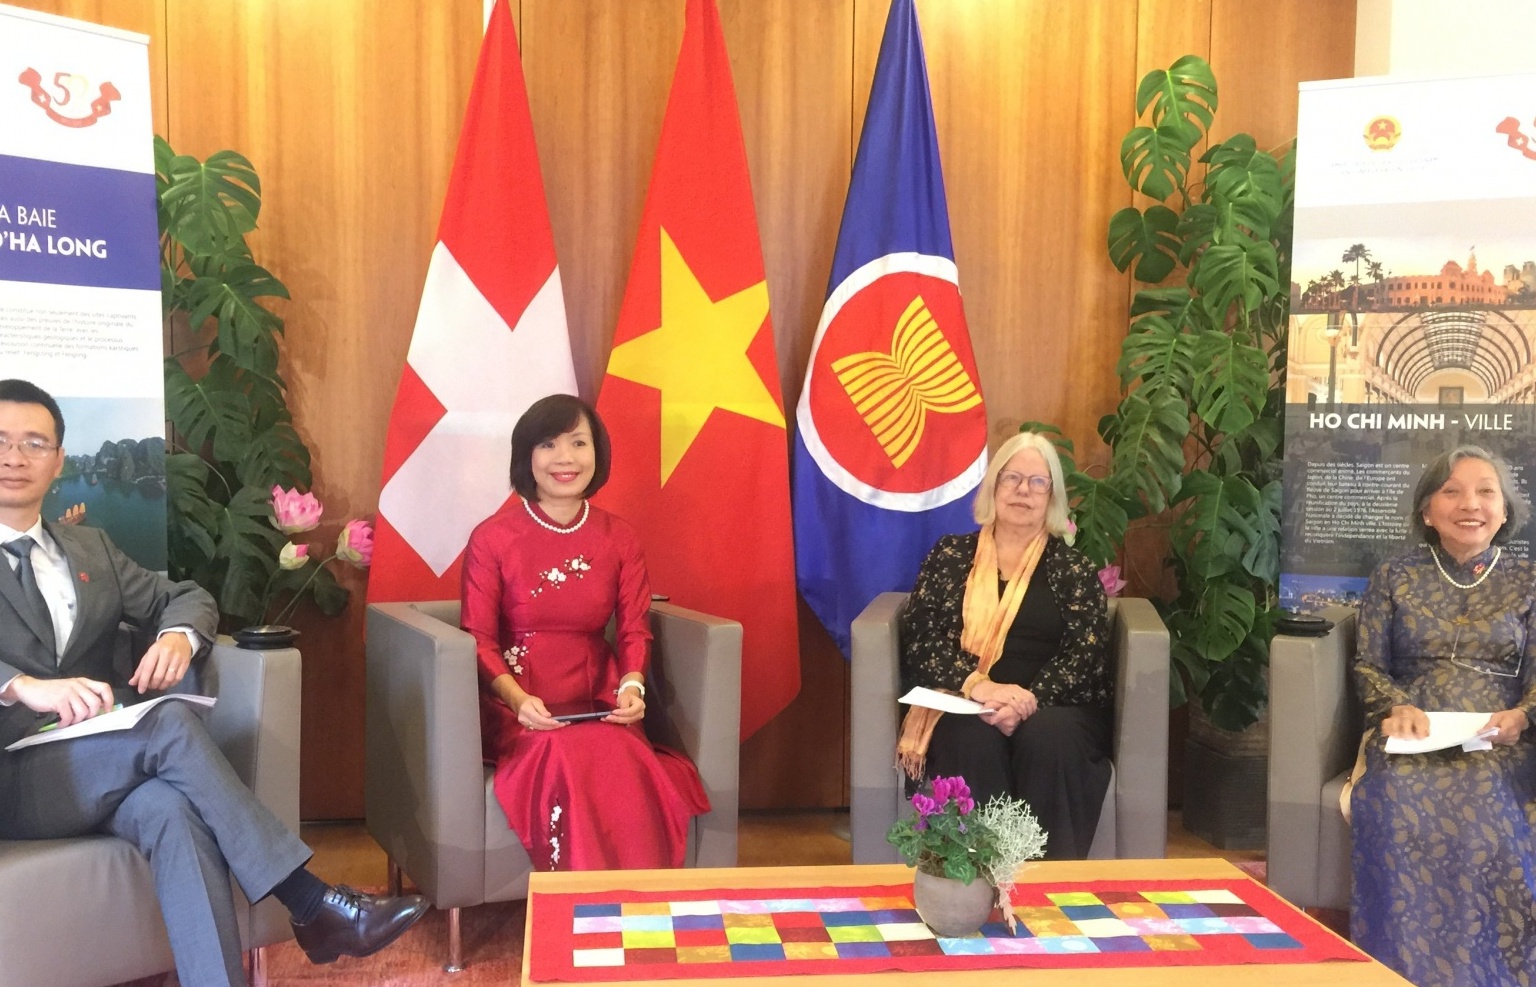 “Vietnam days in Switzerland 2021" promote Vietnam's identity to Switzerland and Europe